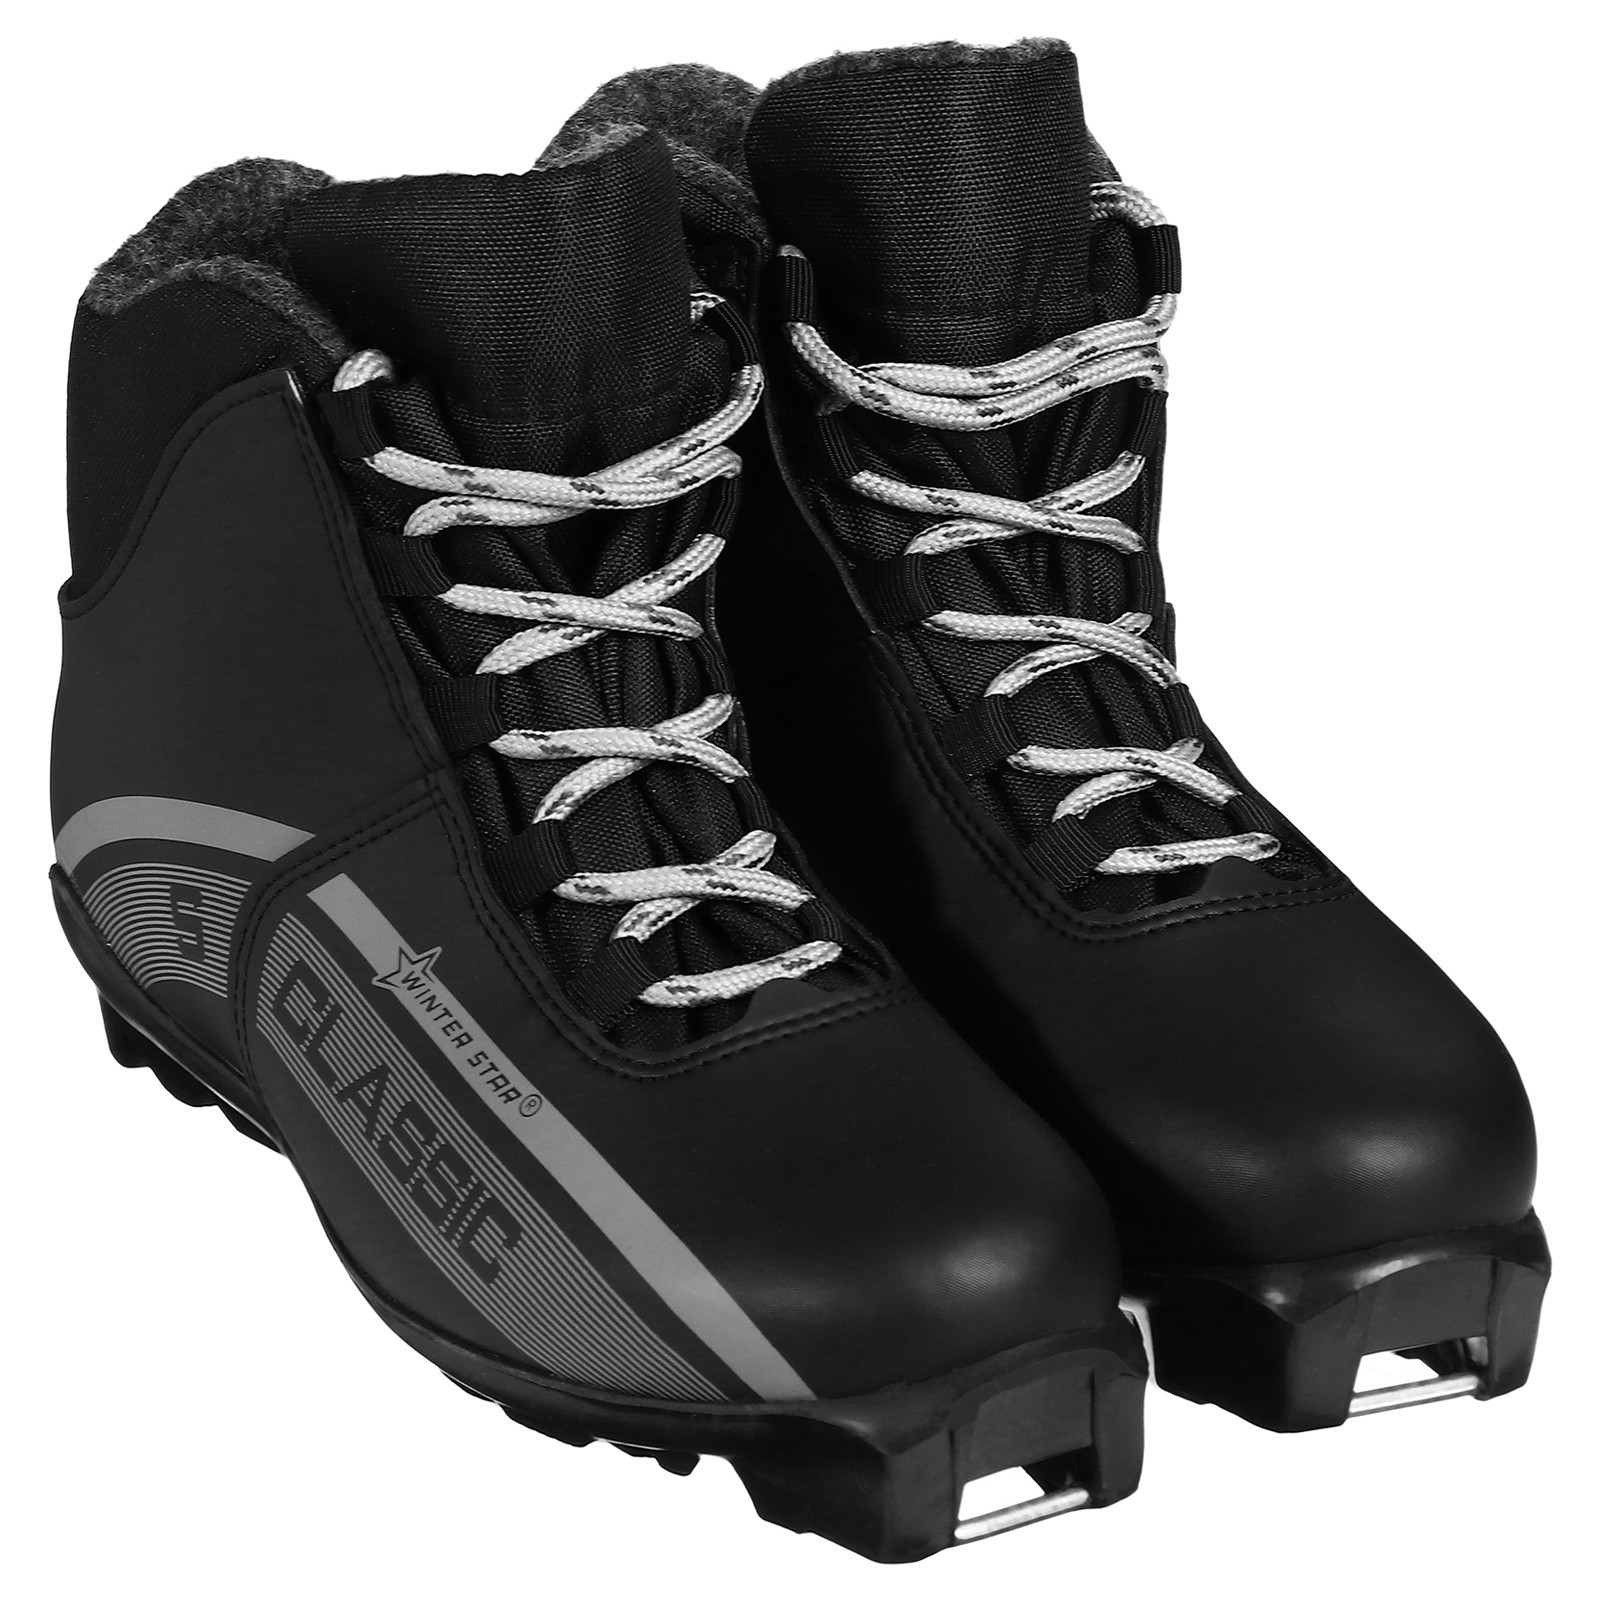 Ботинки лыжные Winter Star classic, SNS, цвет чёрный/серый